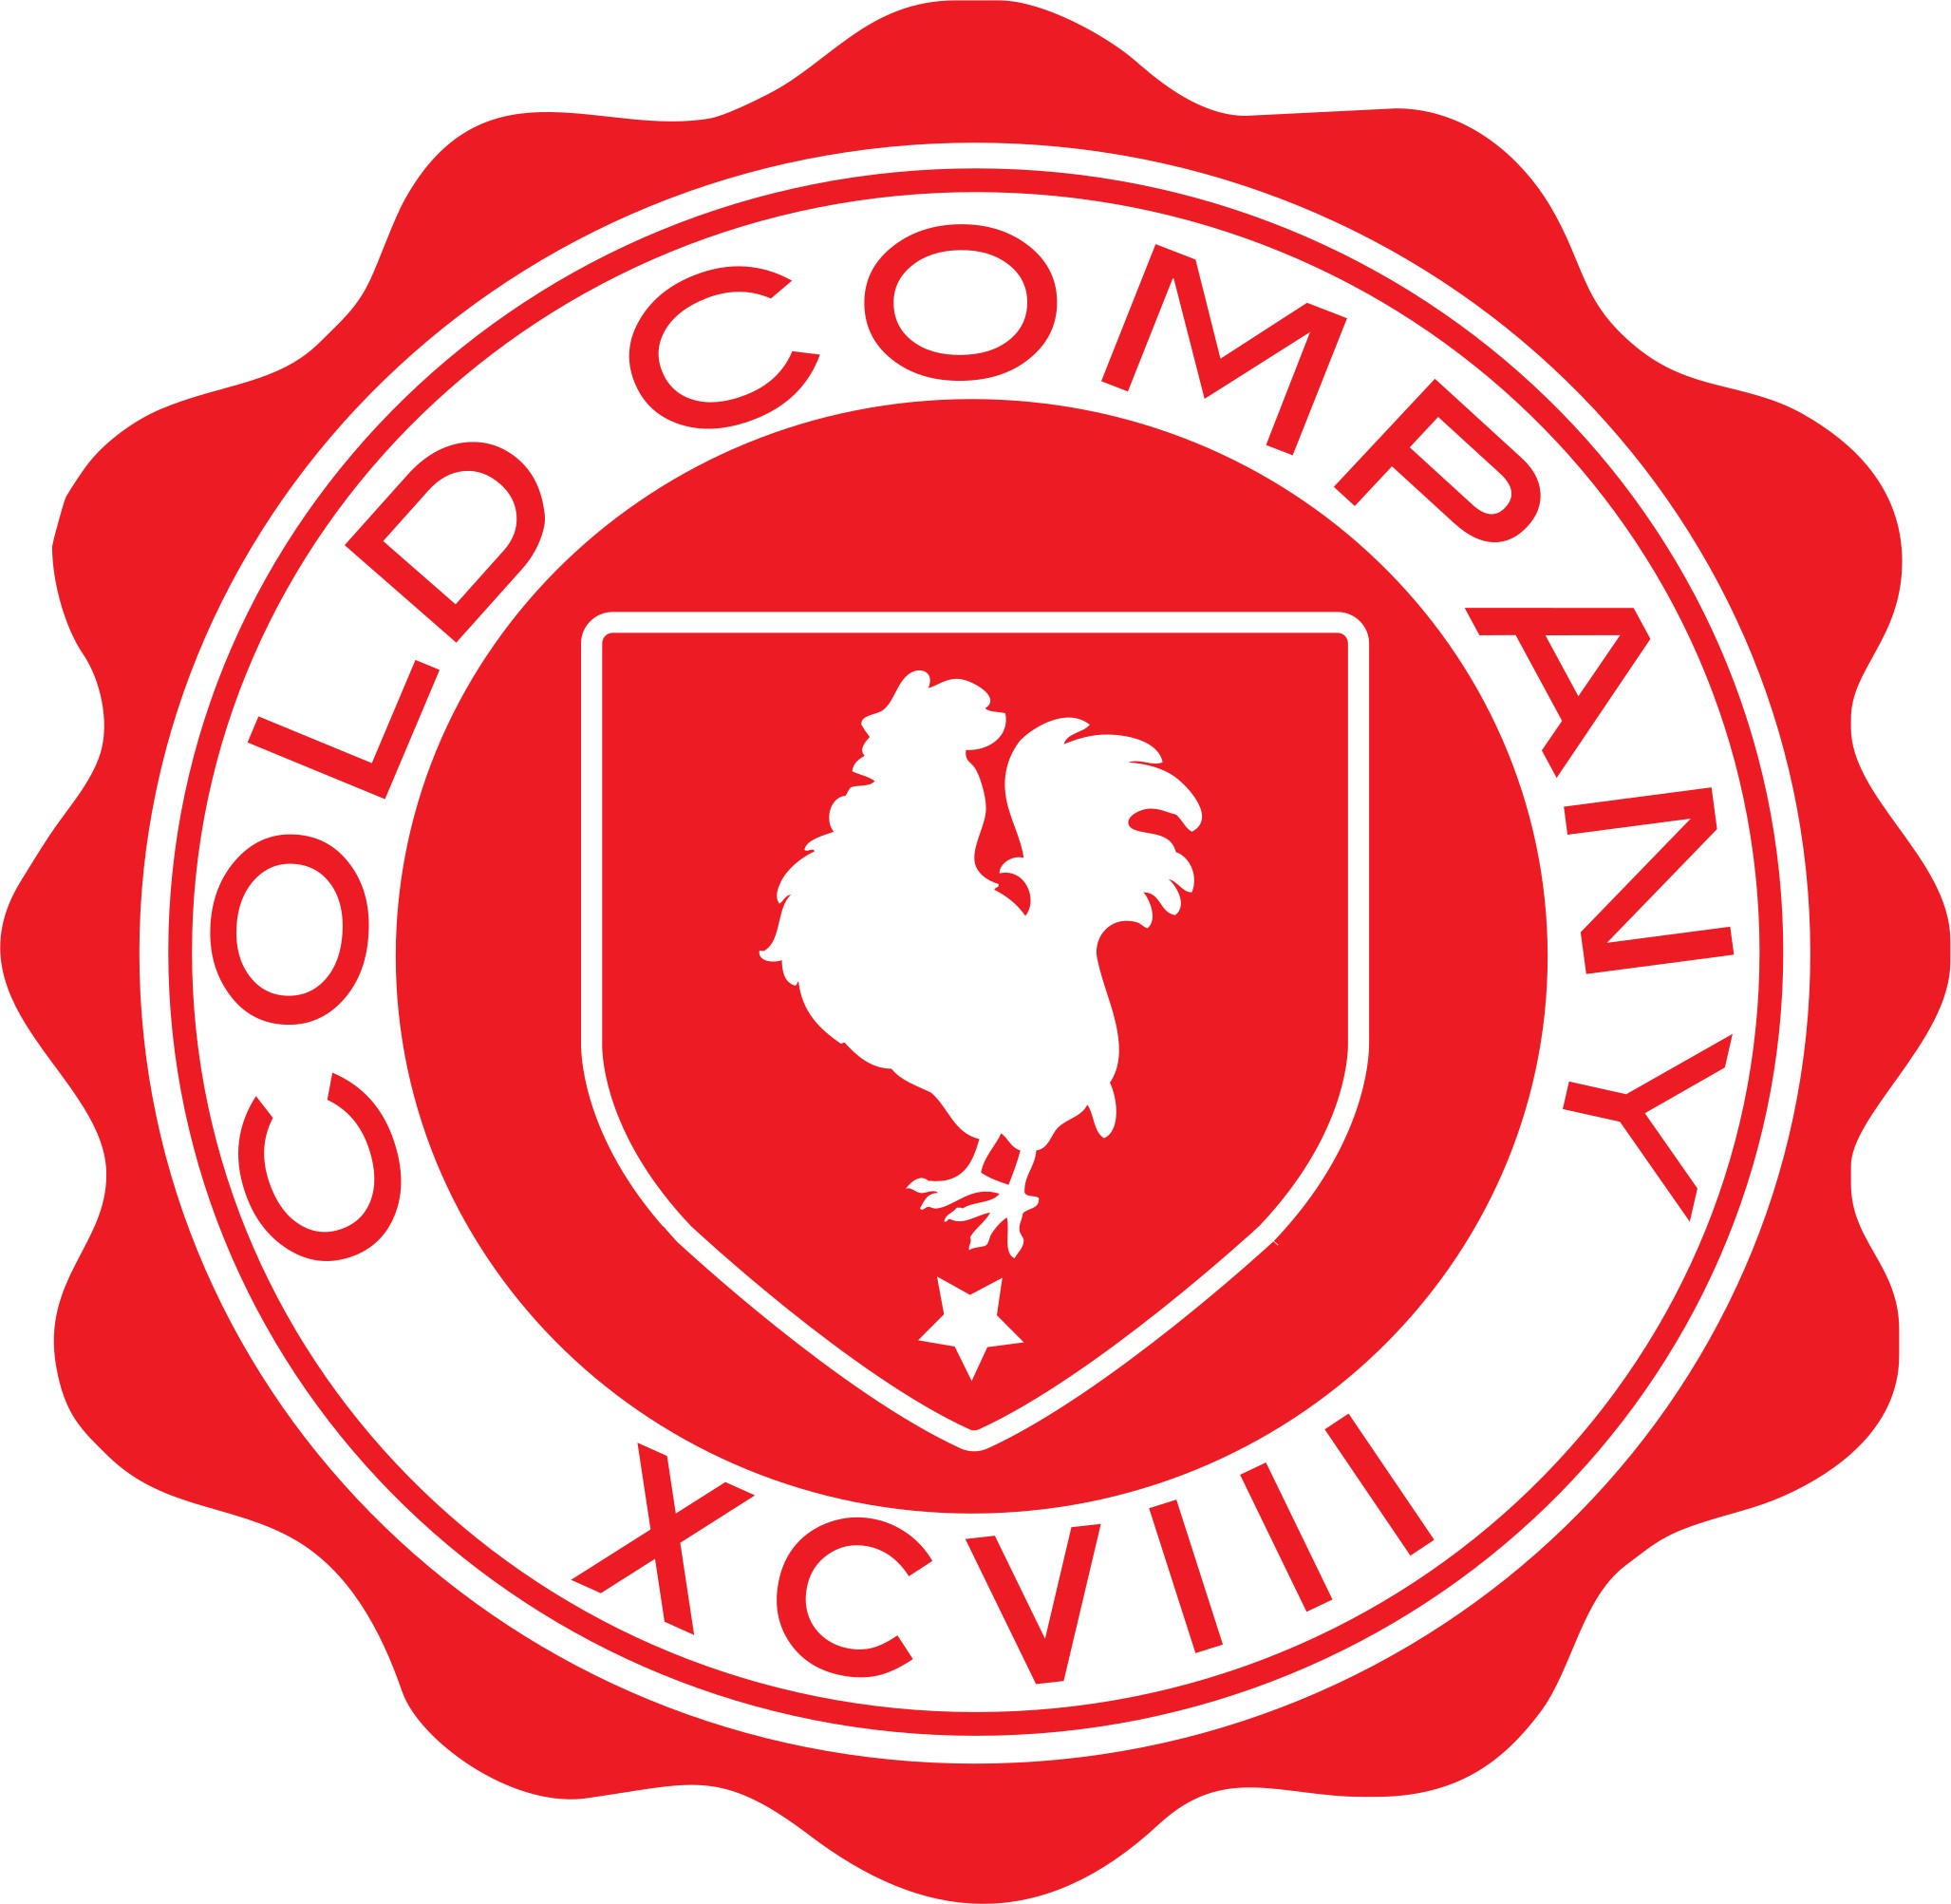 Cold Company